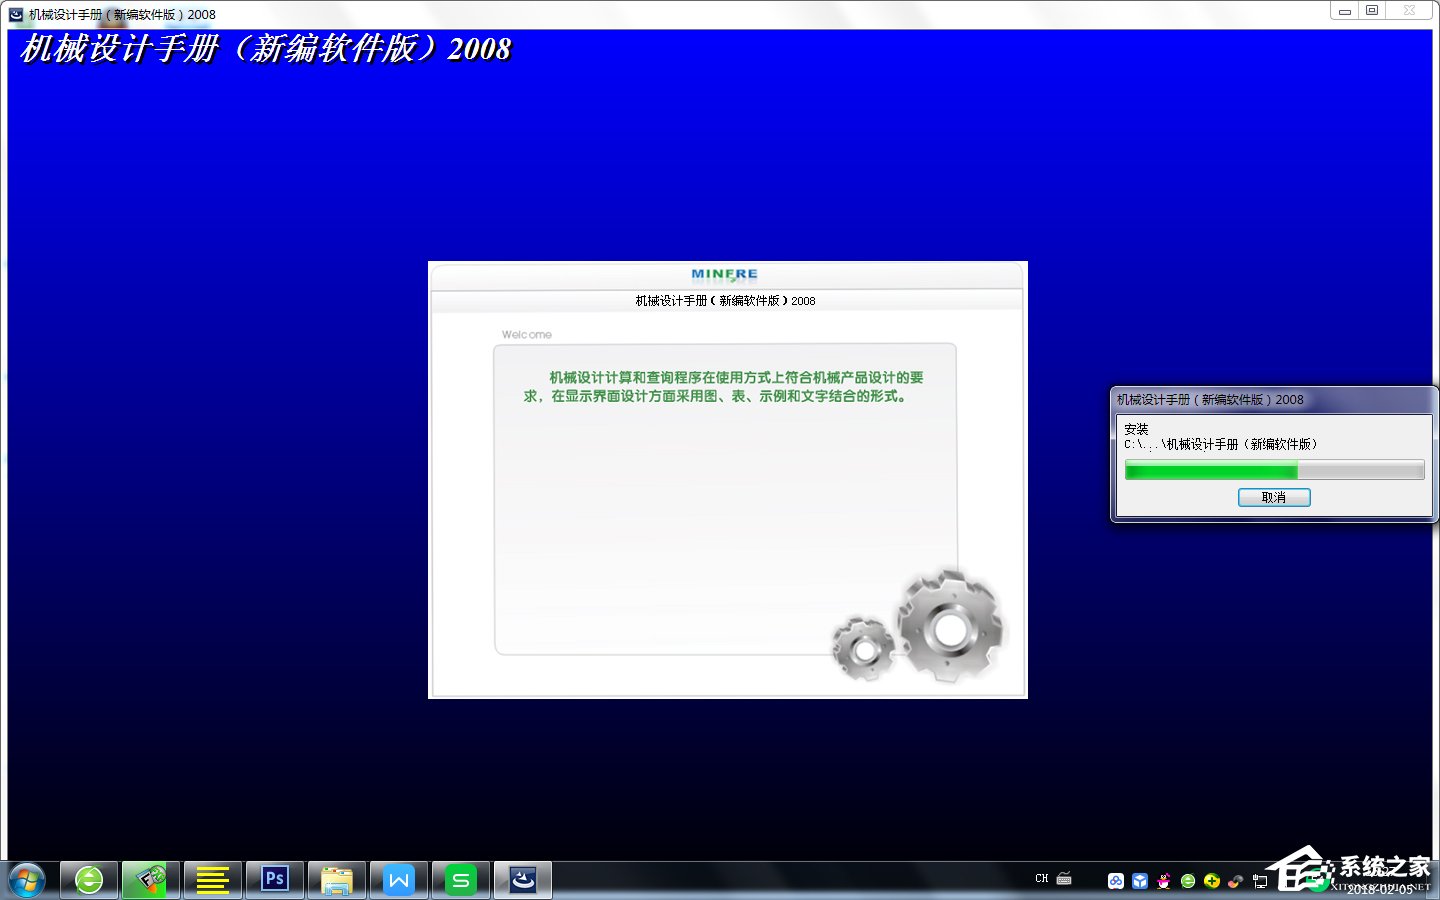 机械设计手册2008新编软件版 V3.0 破解版附安装破解教程